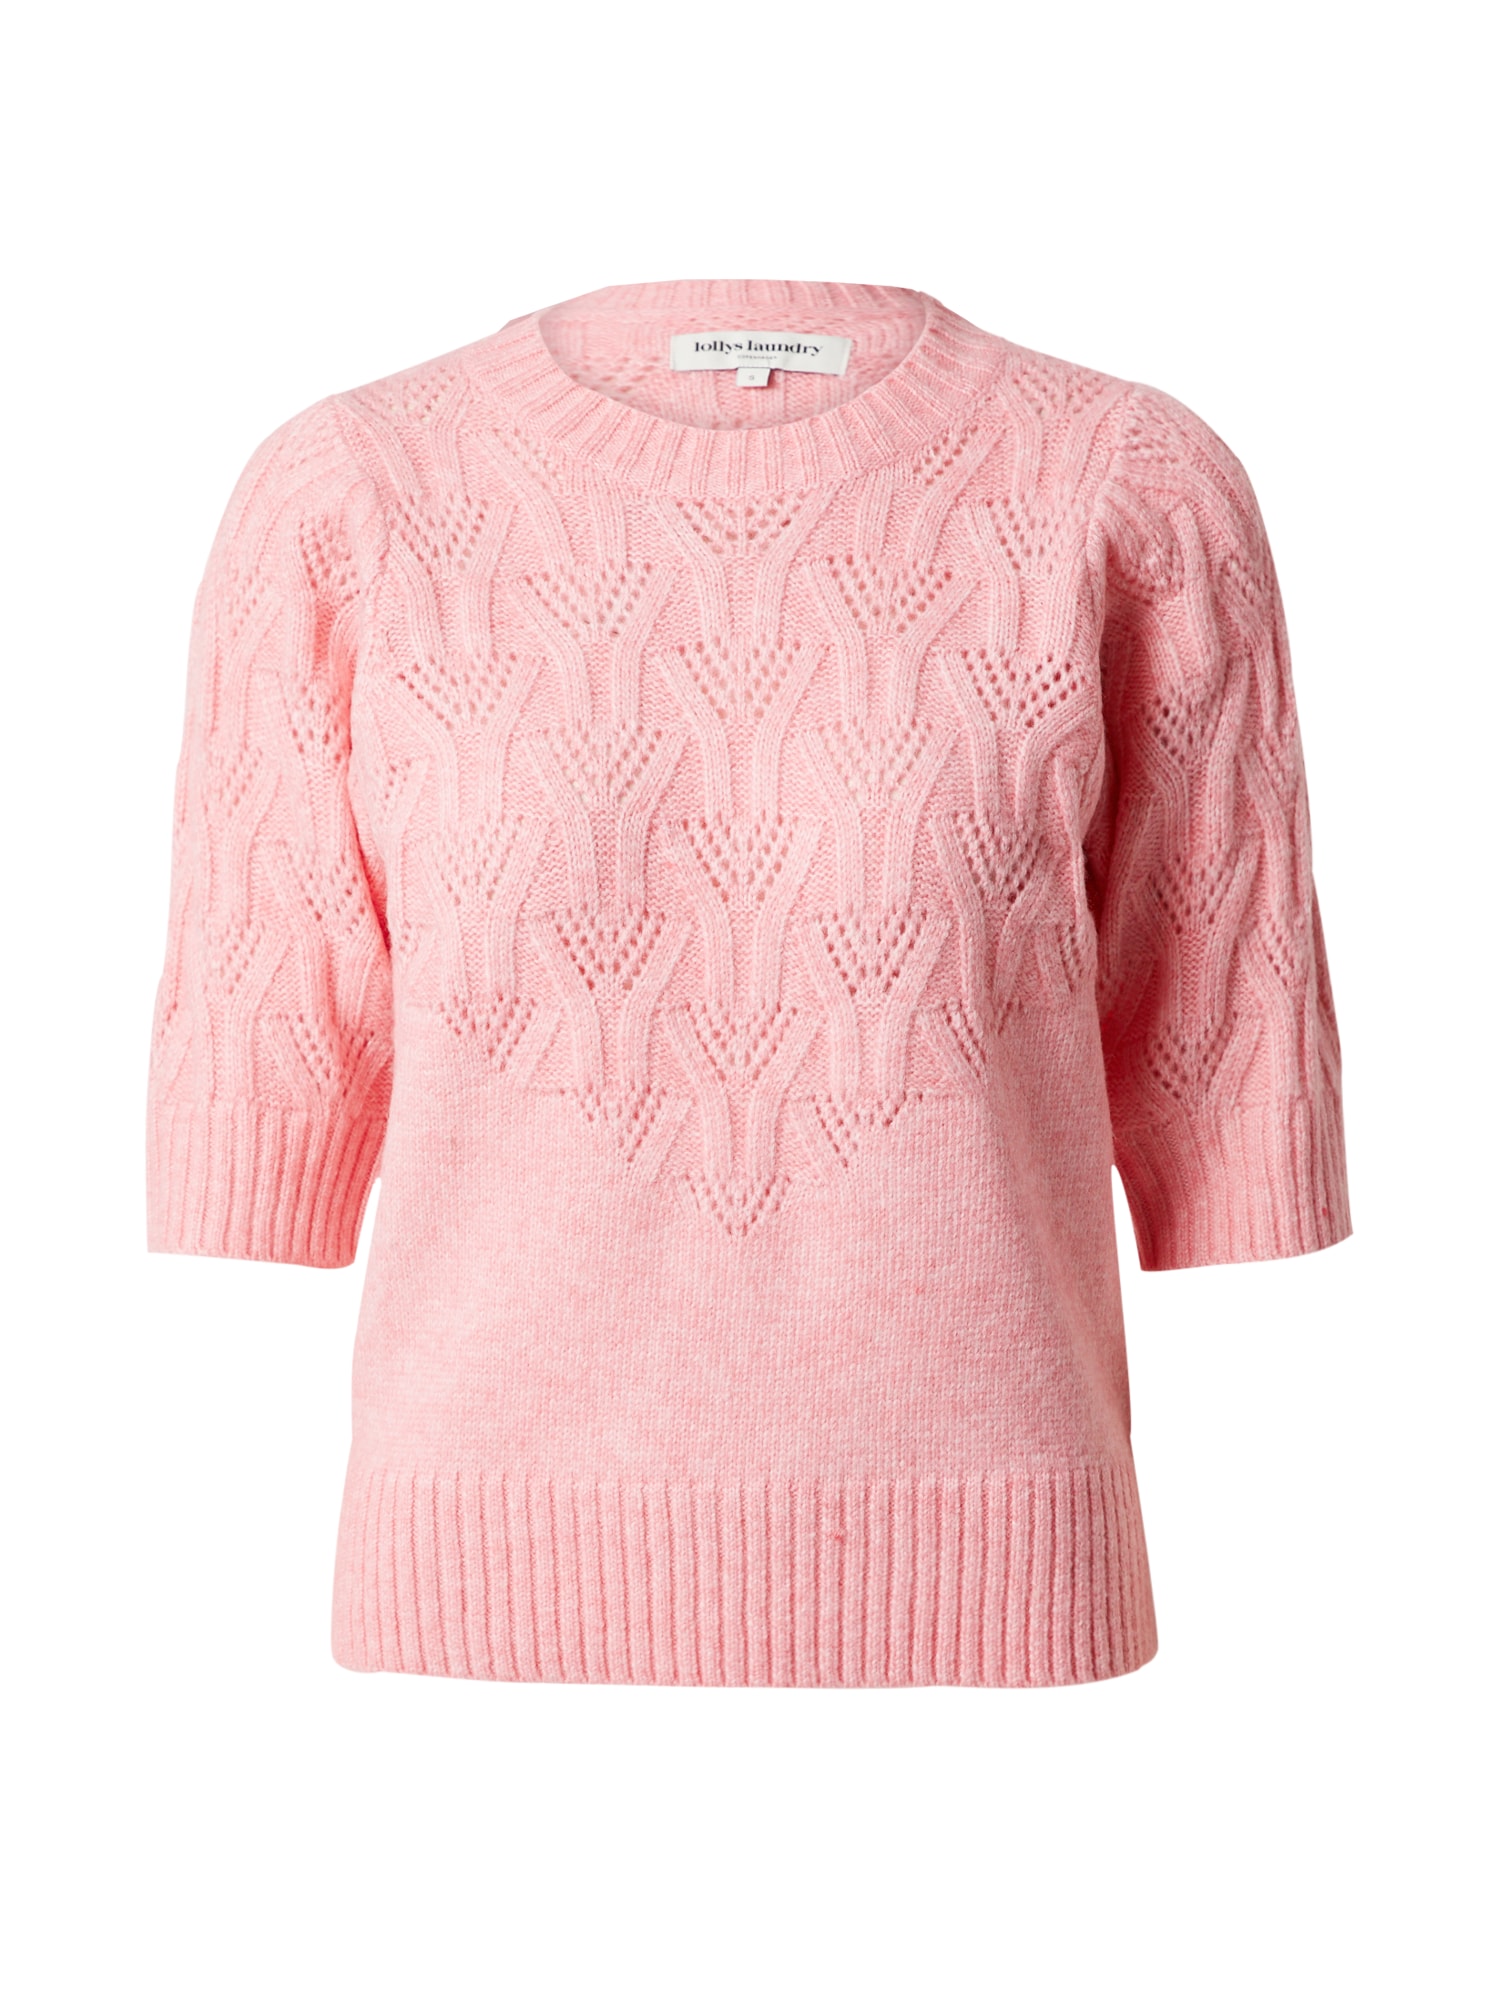 Lollys Laundry Megztinis 'Mala' ryškiai rožinė spalva